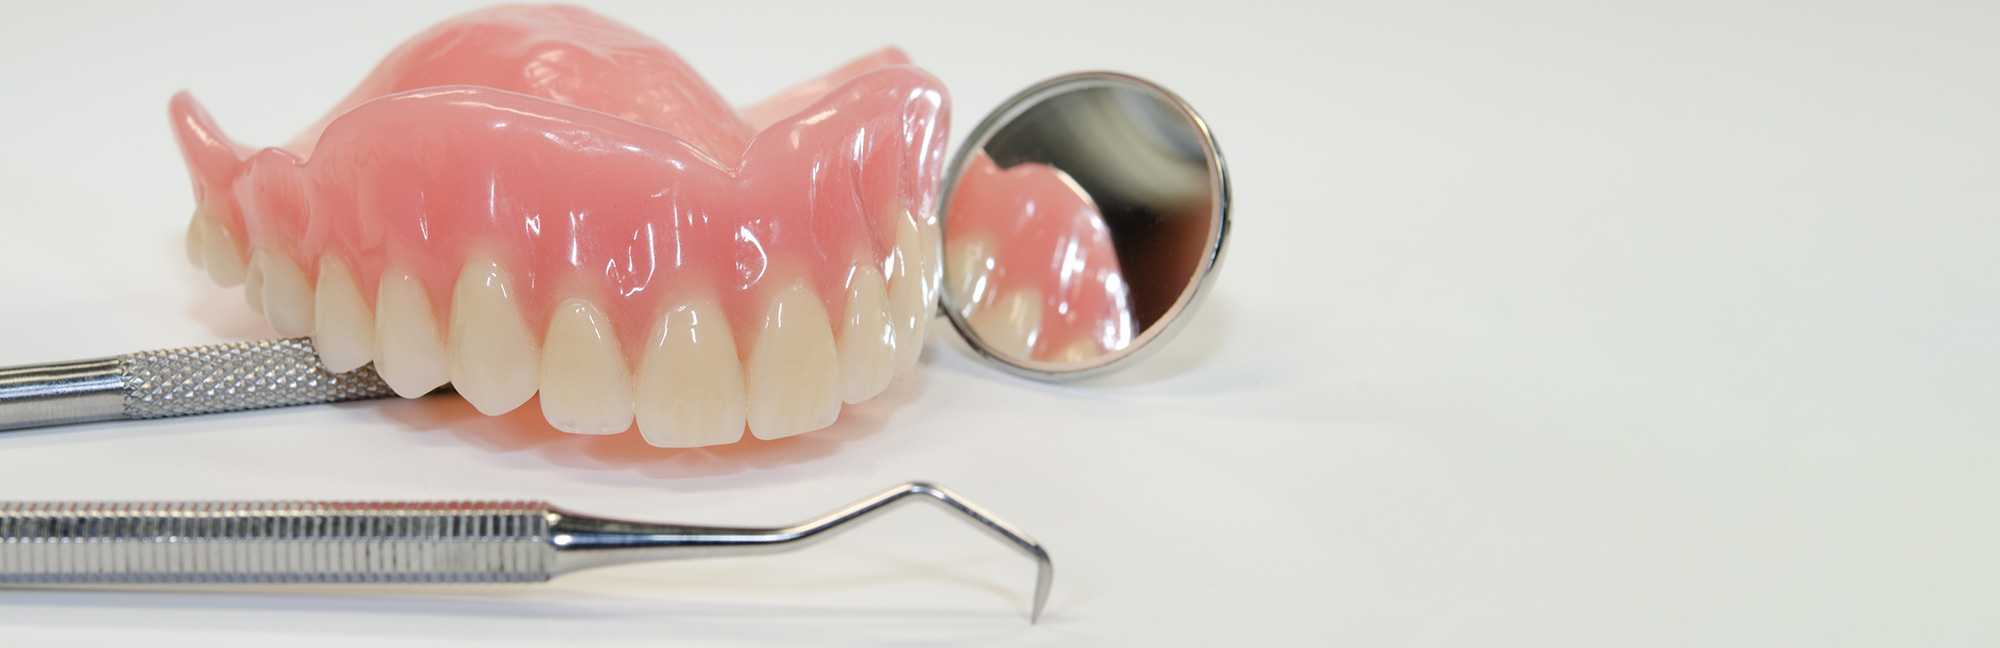 Виды съемных зубных протезов: показания и противопоказания, классификация, фото, стоимость